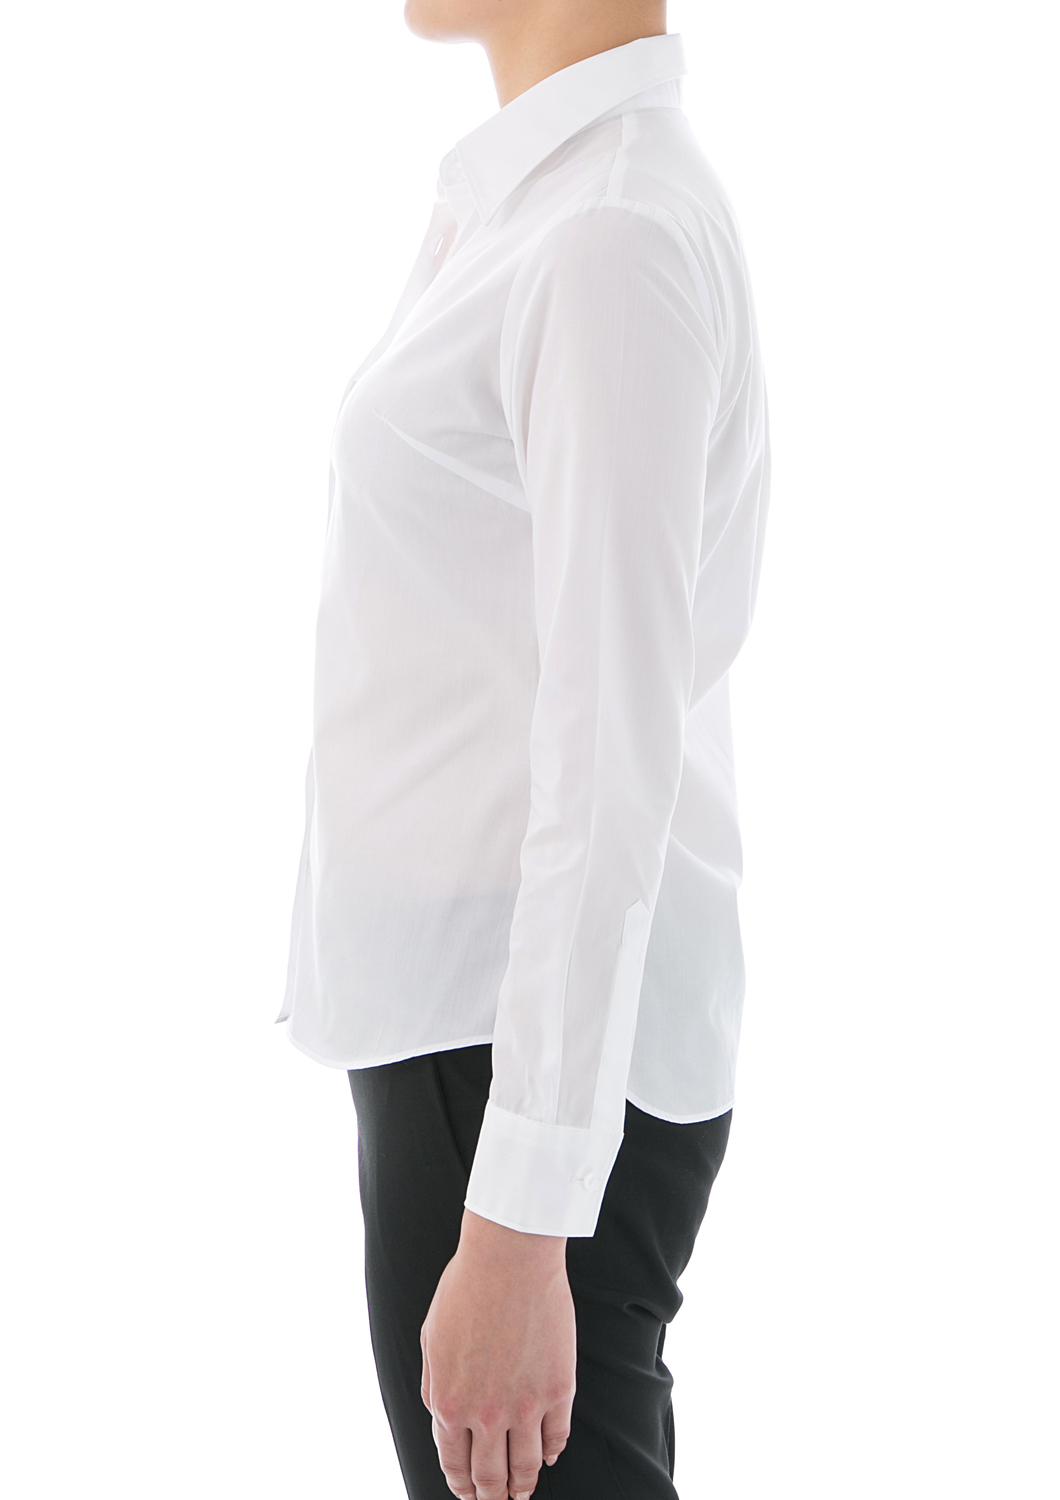 Easy Care Poplin Long Sleeve Shirt White